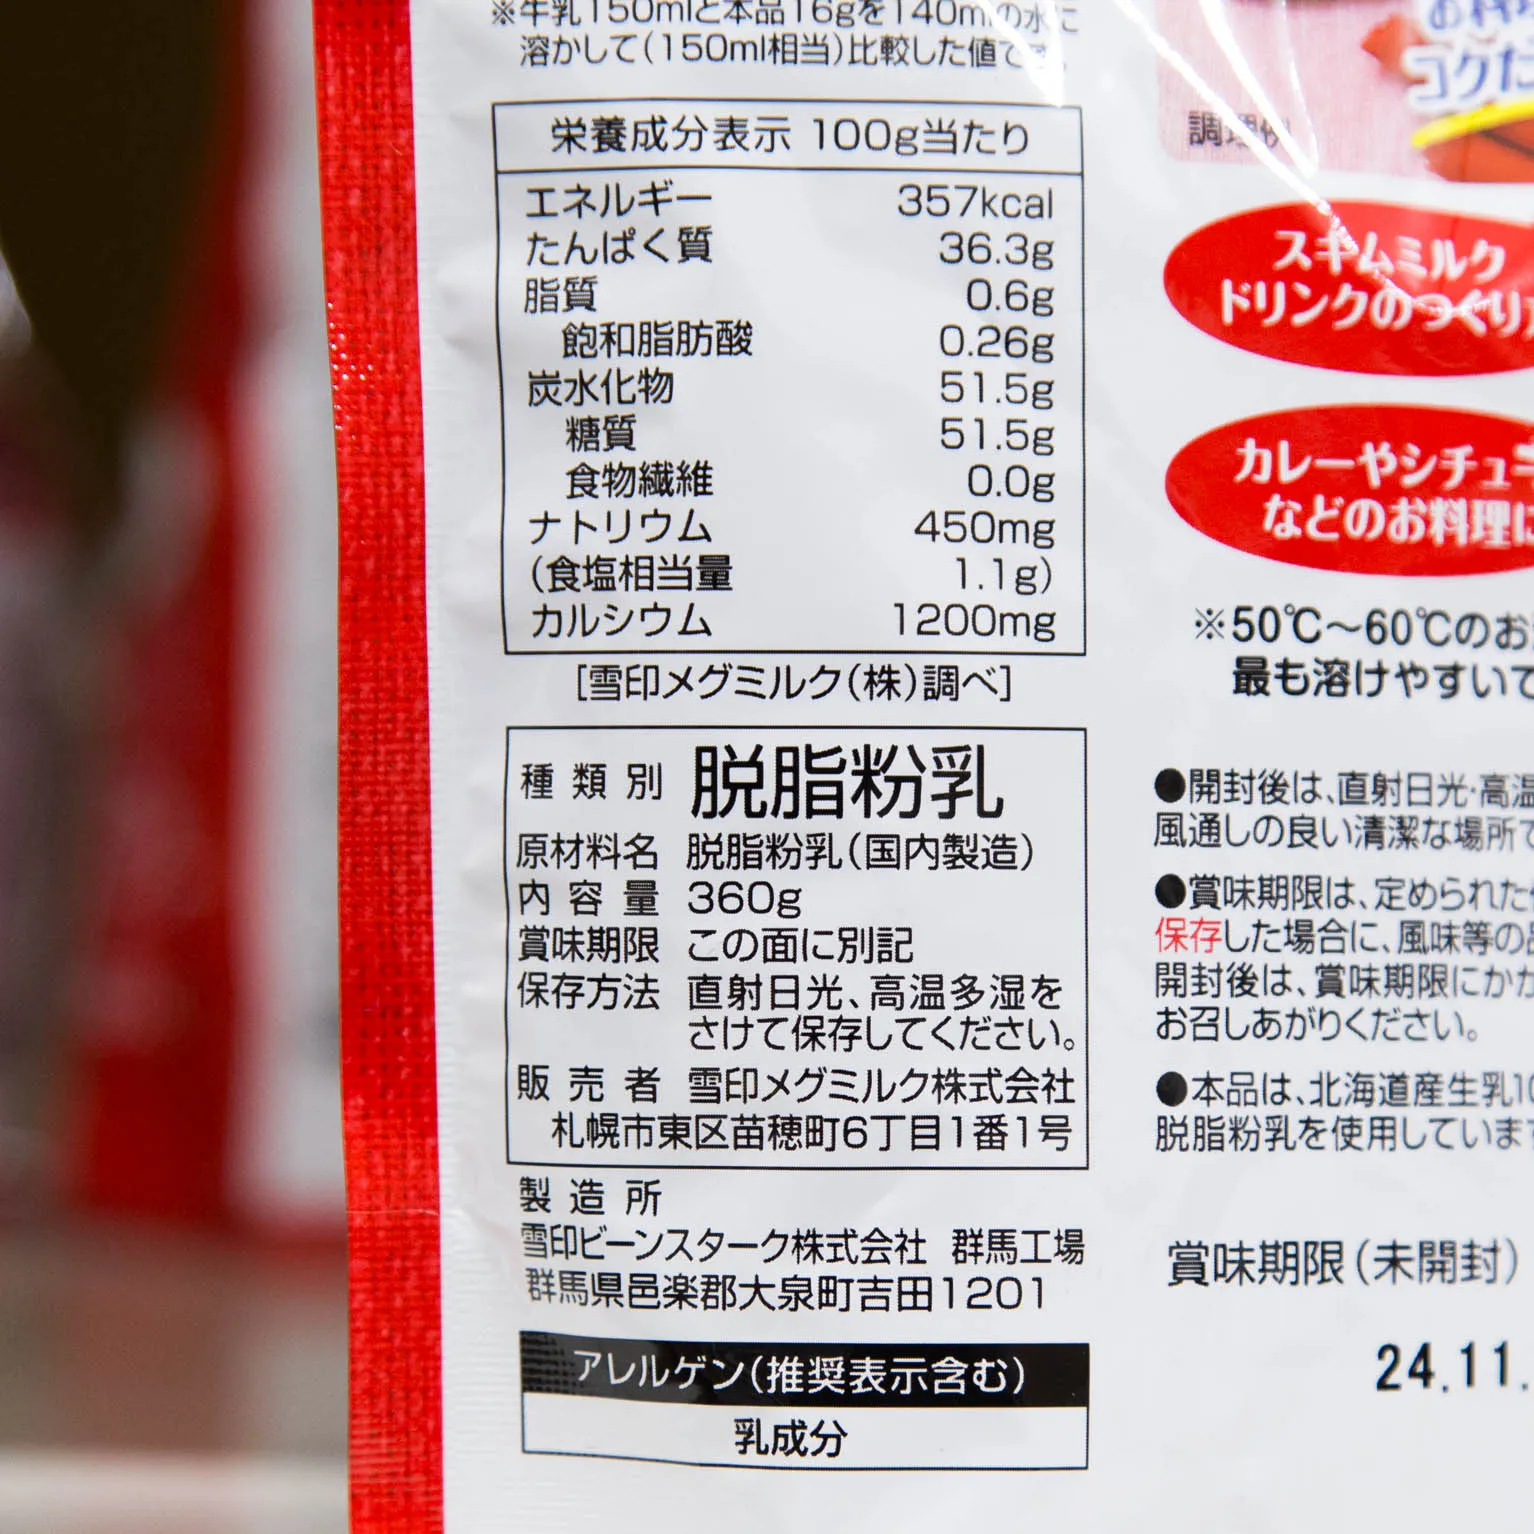 北海道スキムミルク 脱脂粉乳 360